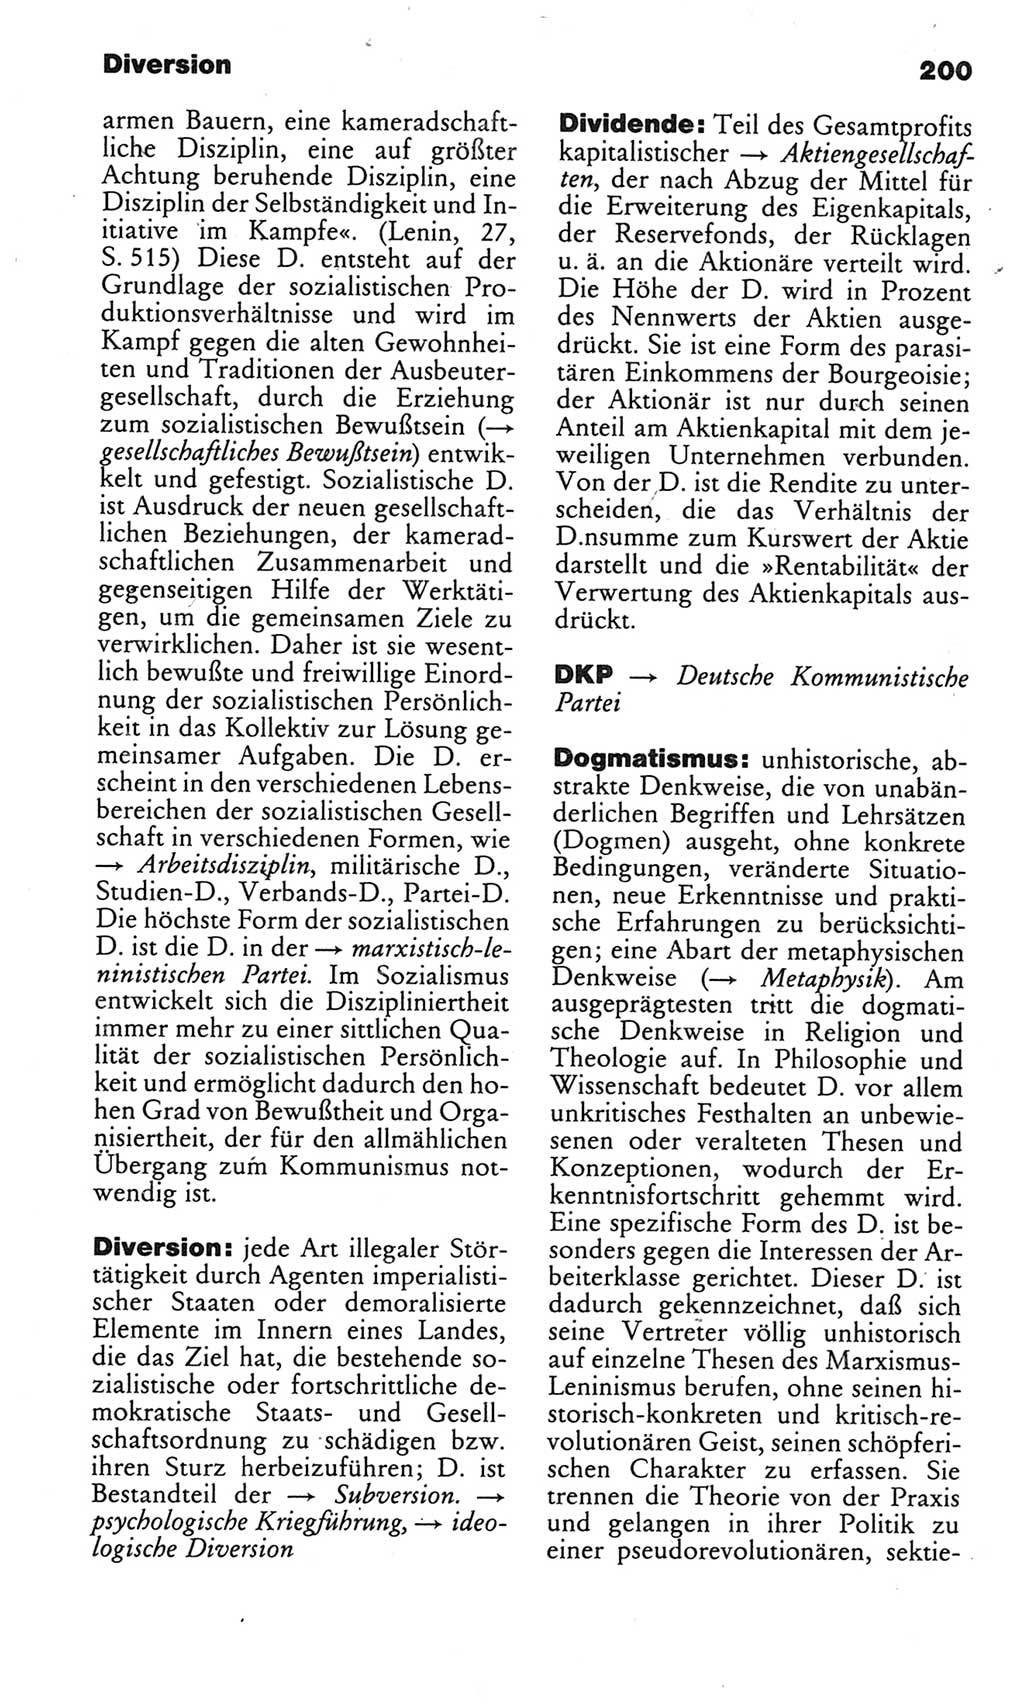 Kleines politisches Wörterbuch [Deutsche Demokratische Republik (DDR)] 1983, Seite 200 (Kl. pol. Wb. DDR 1983, S. 200)